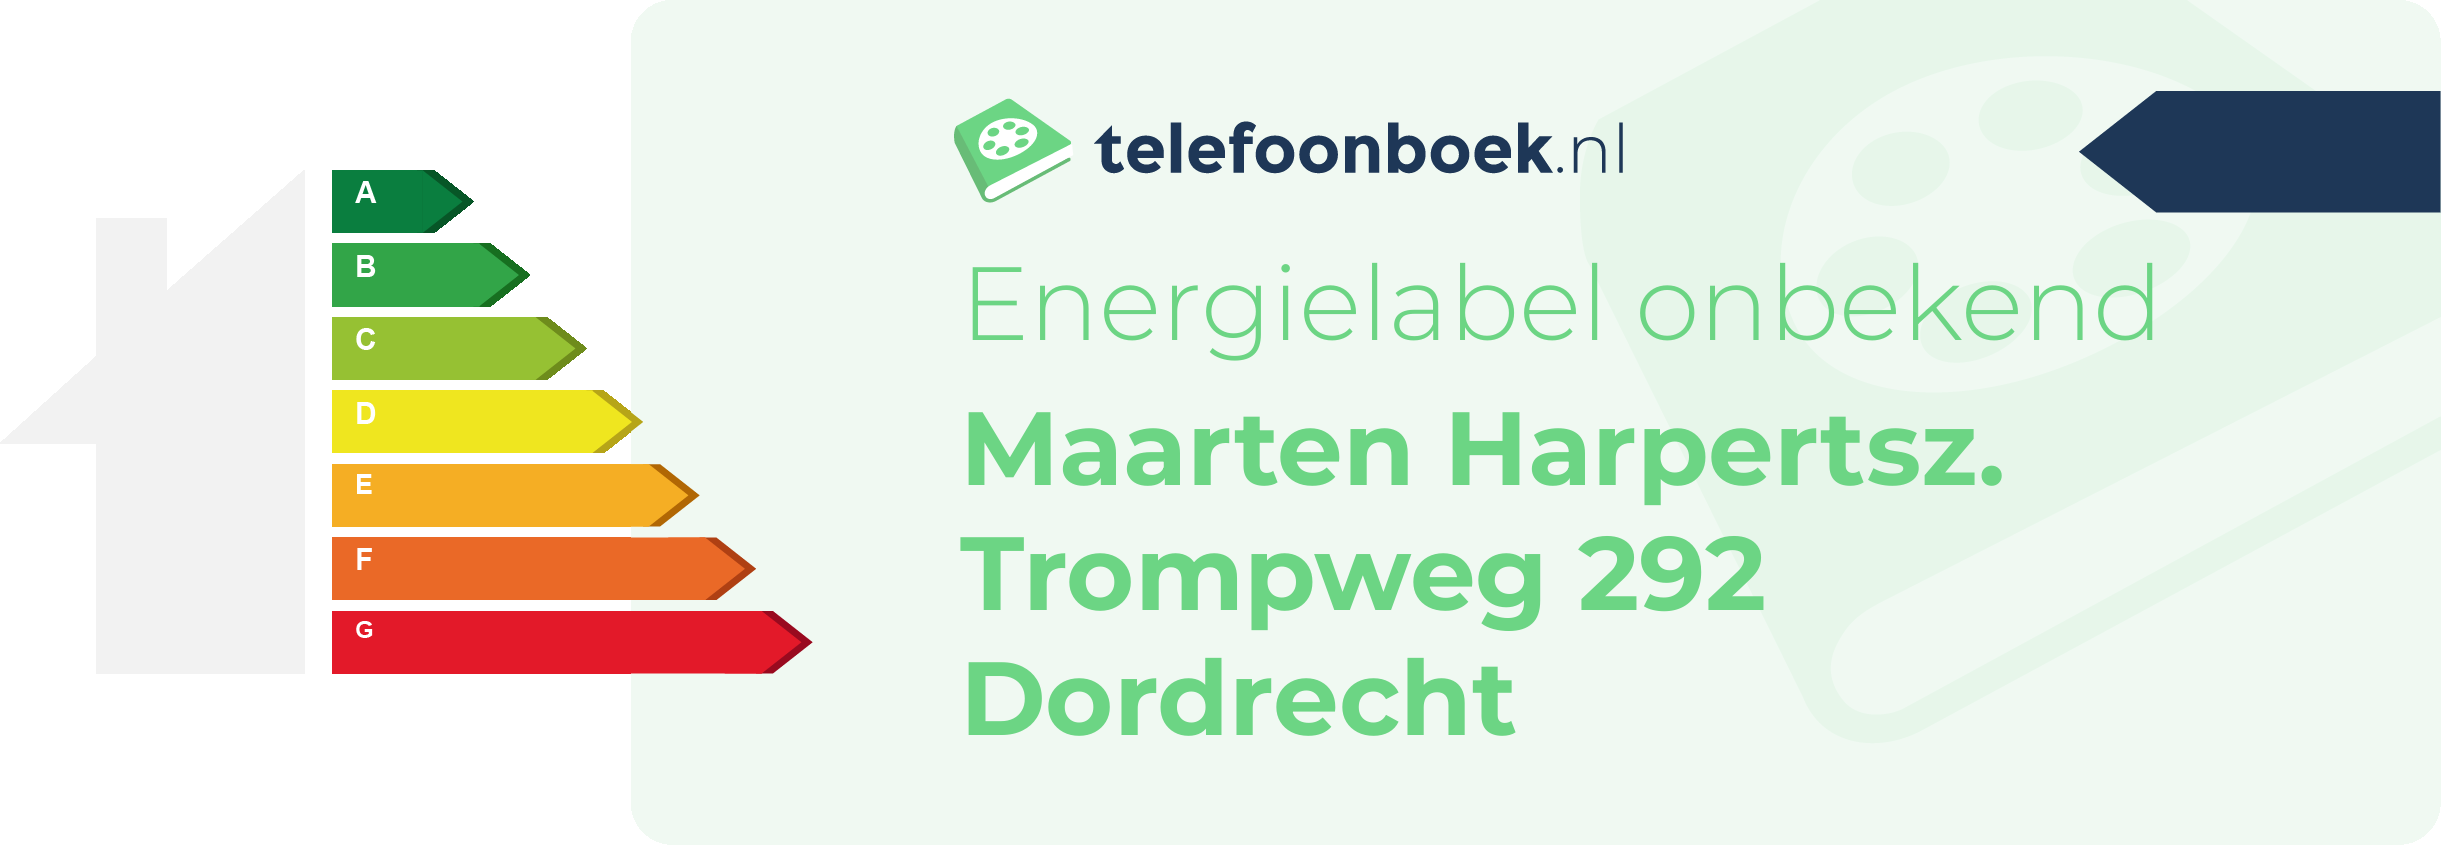 Energielabel Maarten Harpertsz. Trompweg 292 Dordrecht